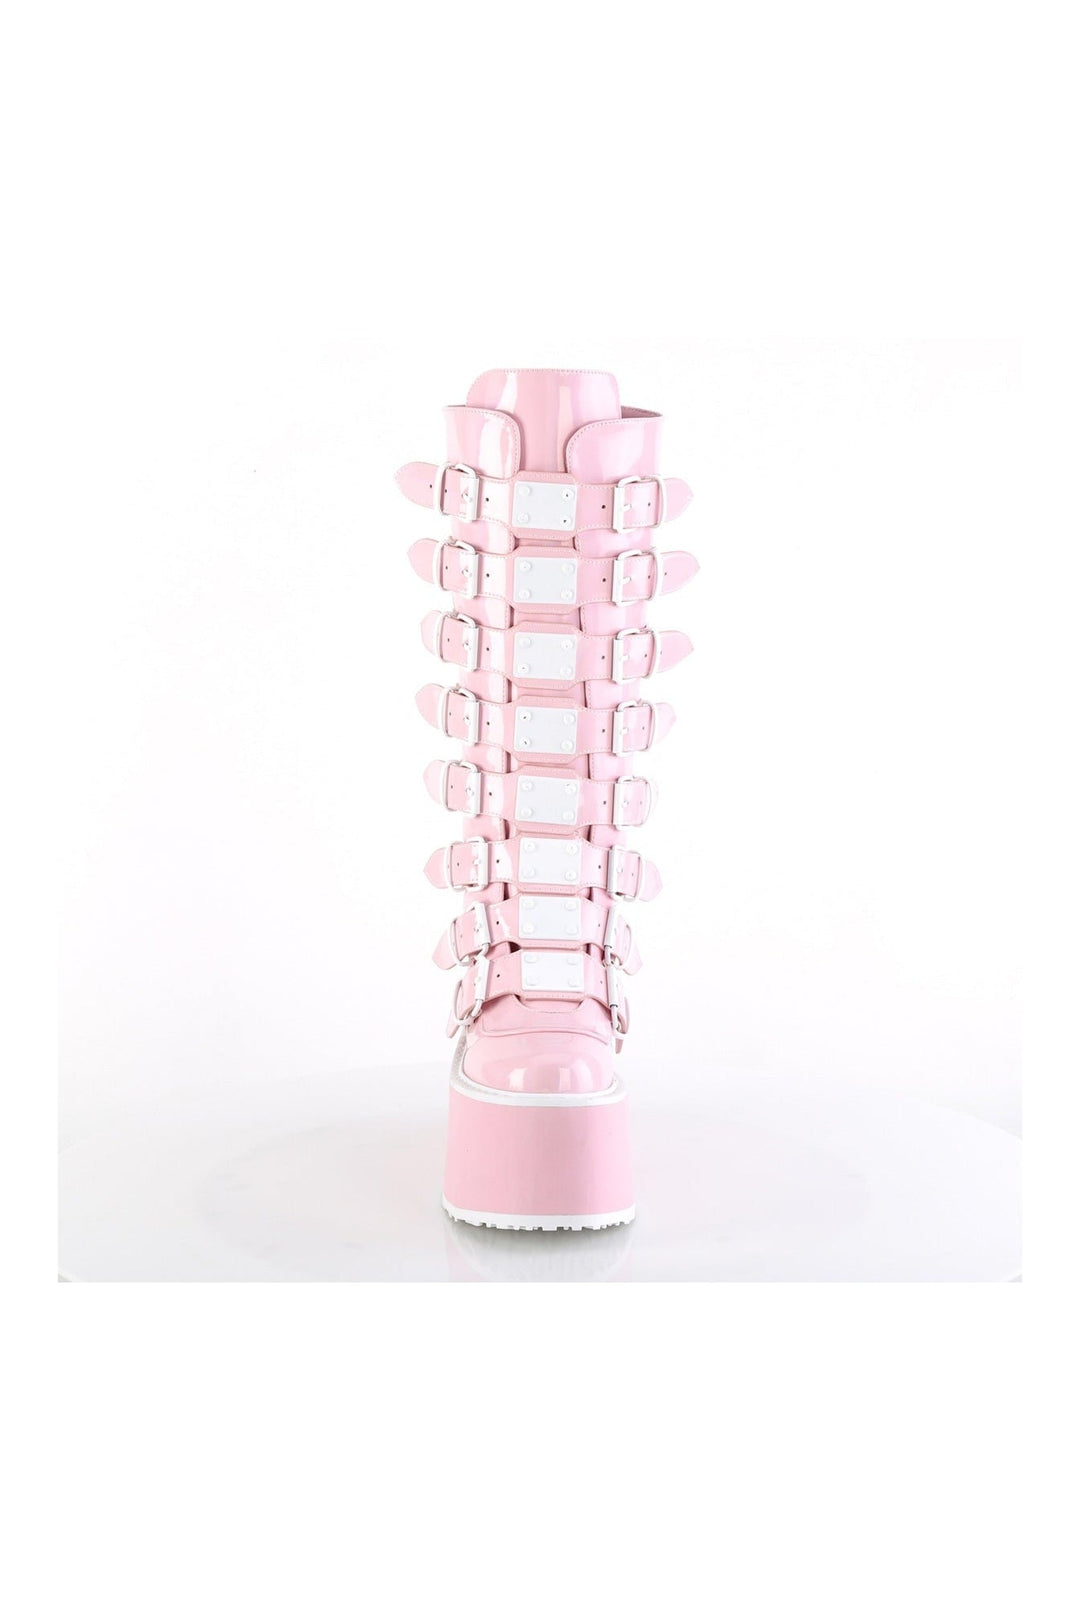 DAMNED-318 Pink Hologram Knee boot